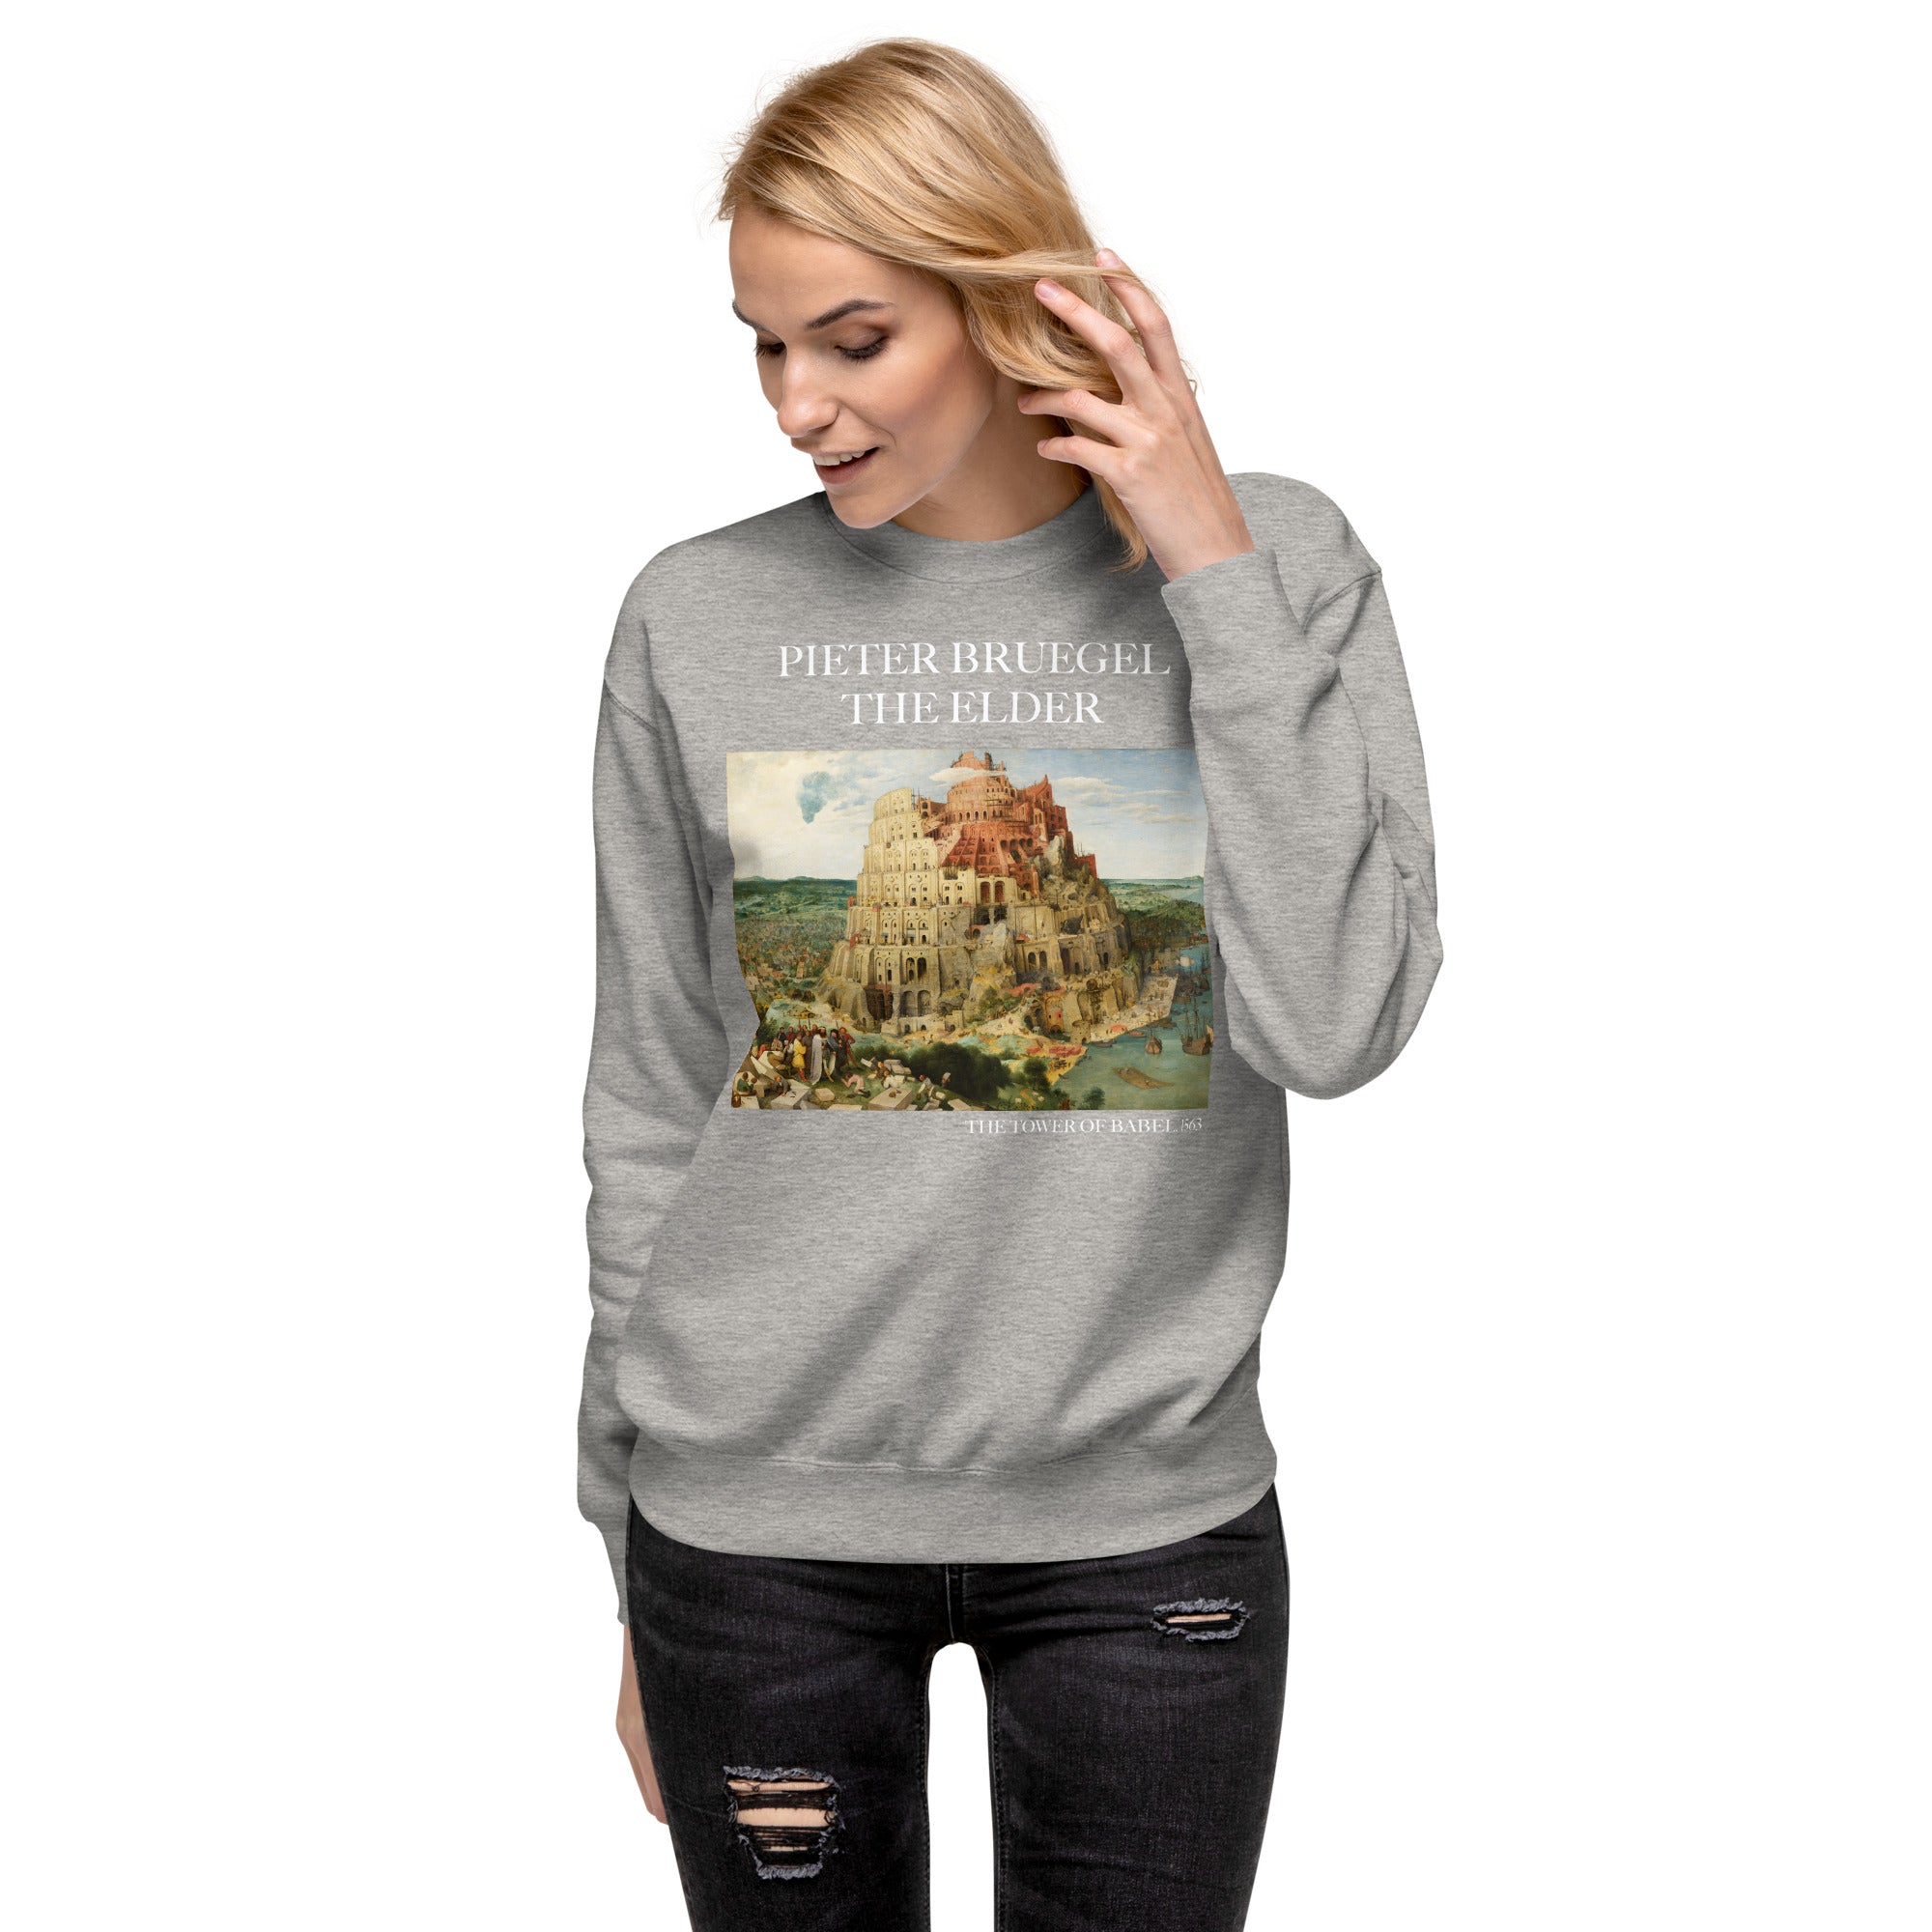 Pieter Bruegel the Elder 'The Tower of Babel' Famous Painting Sweatshirt | Unisex Premium Sweatshirt